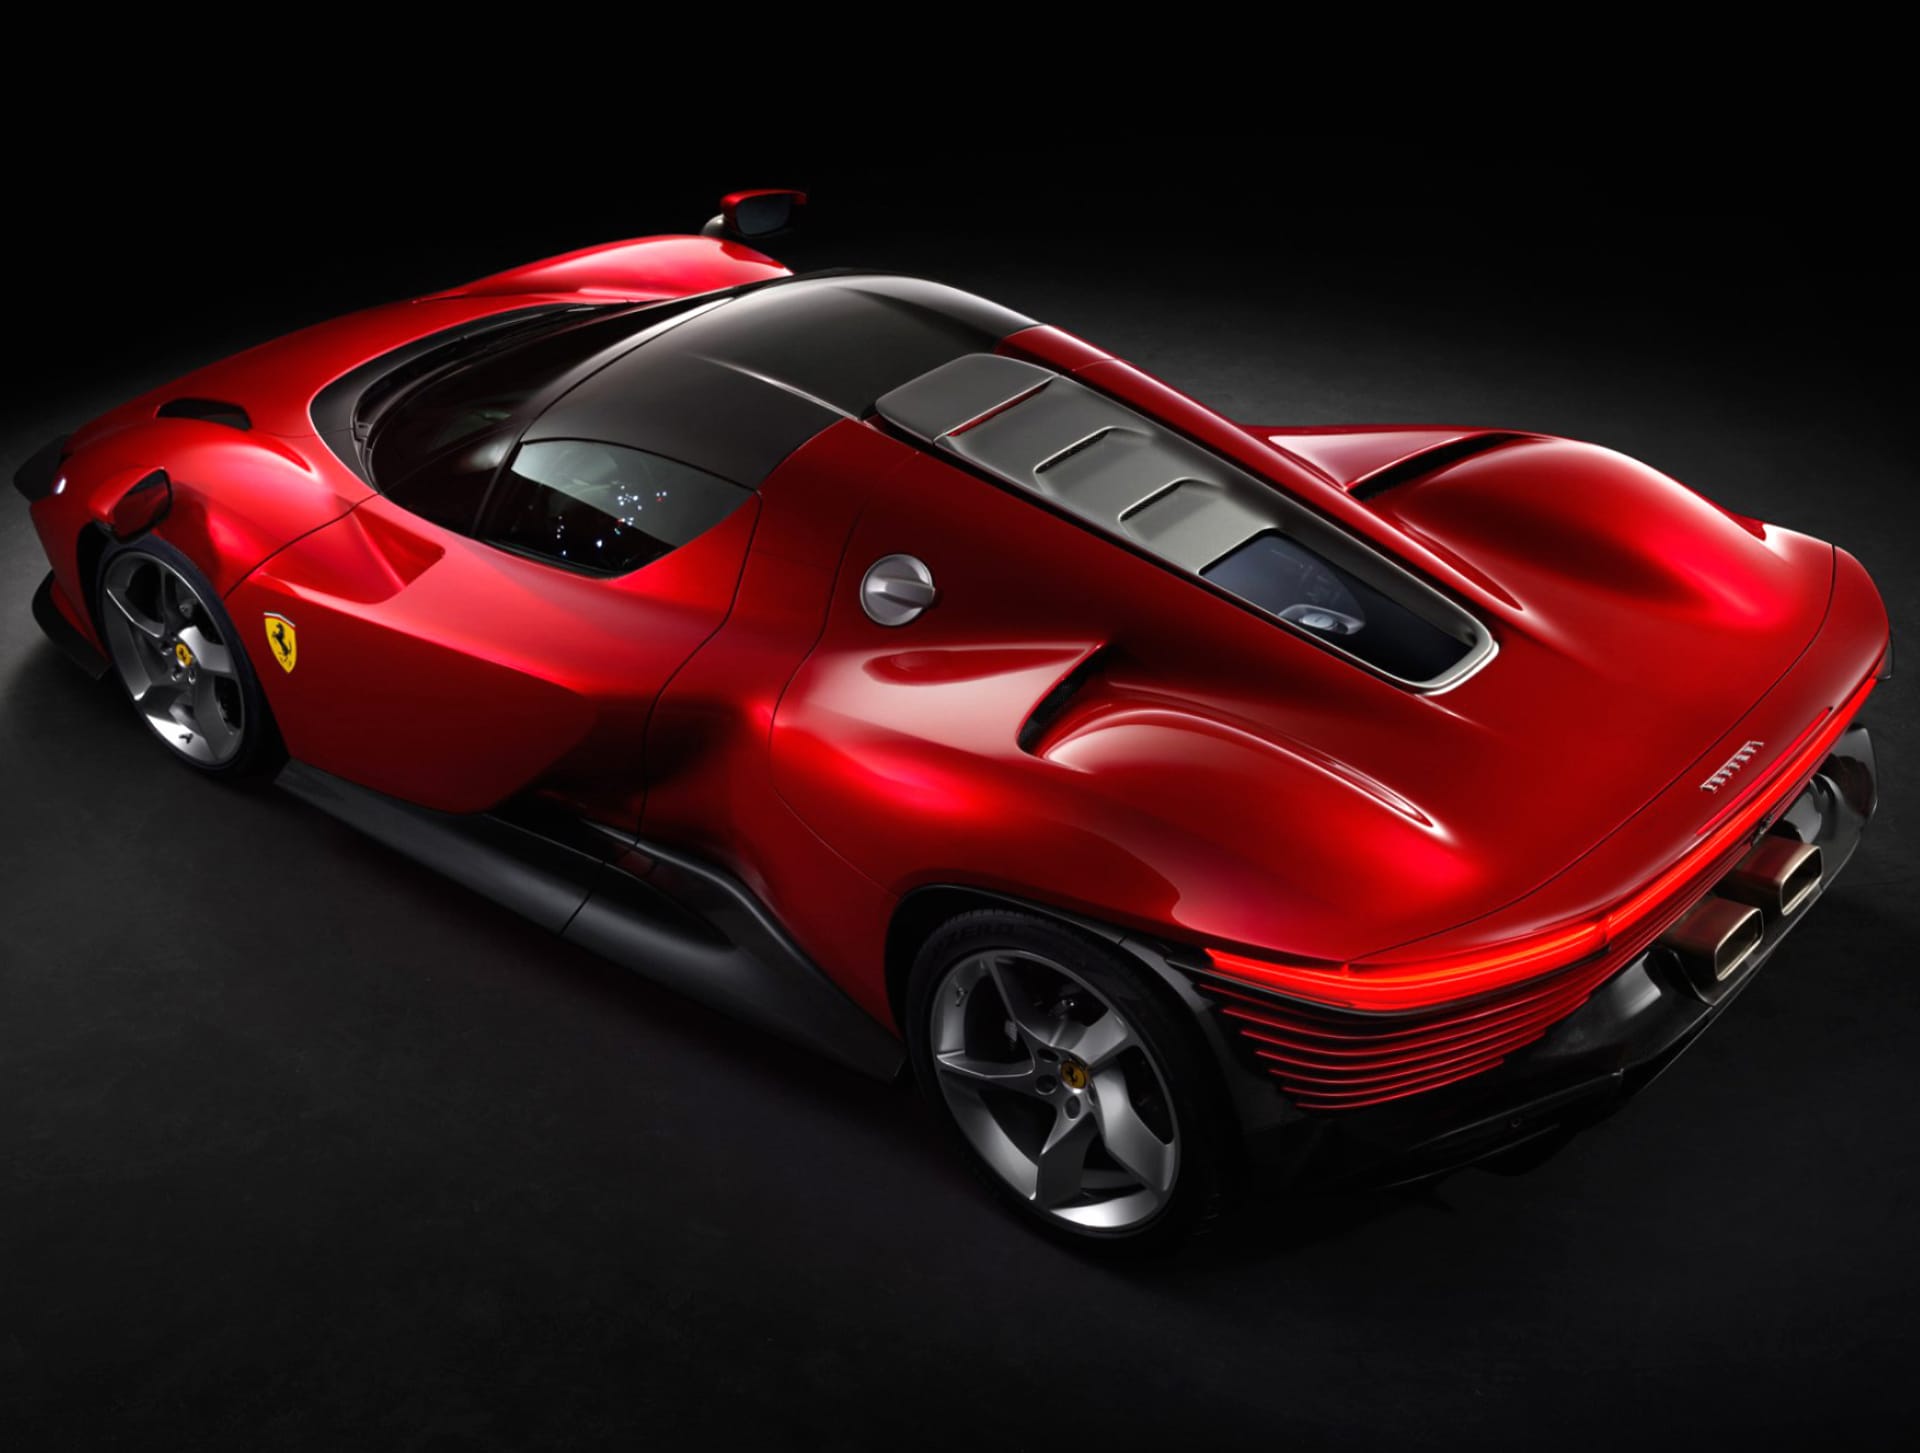 Ferrari Daytona SP3 at 1024 x 1024 iPad size wallpapers HD quality